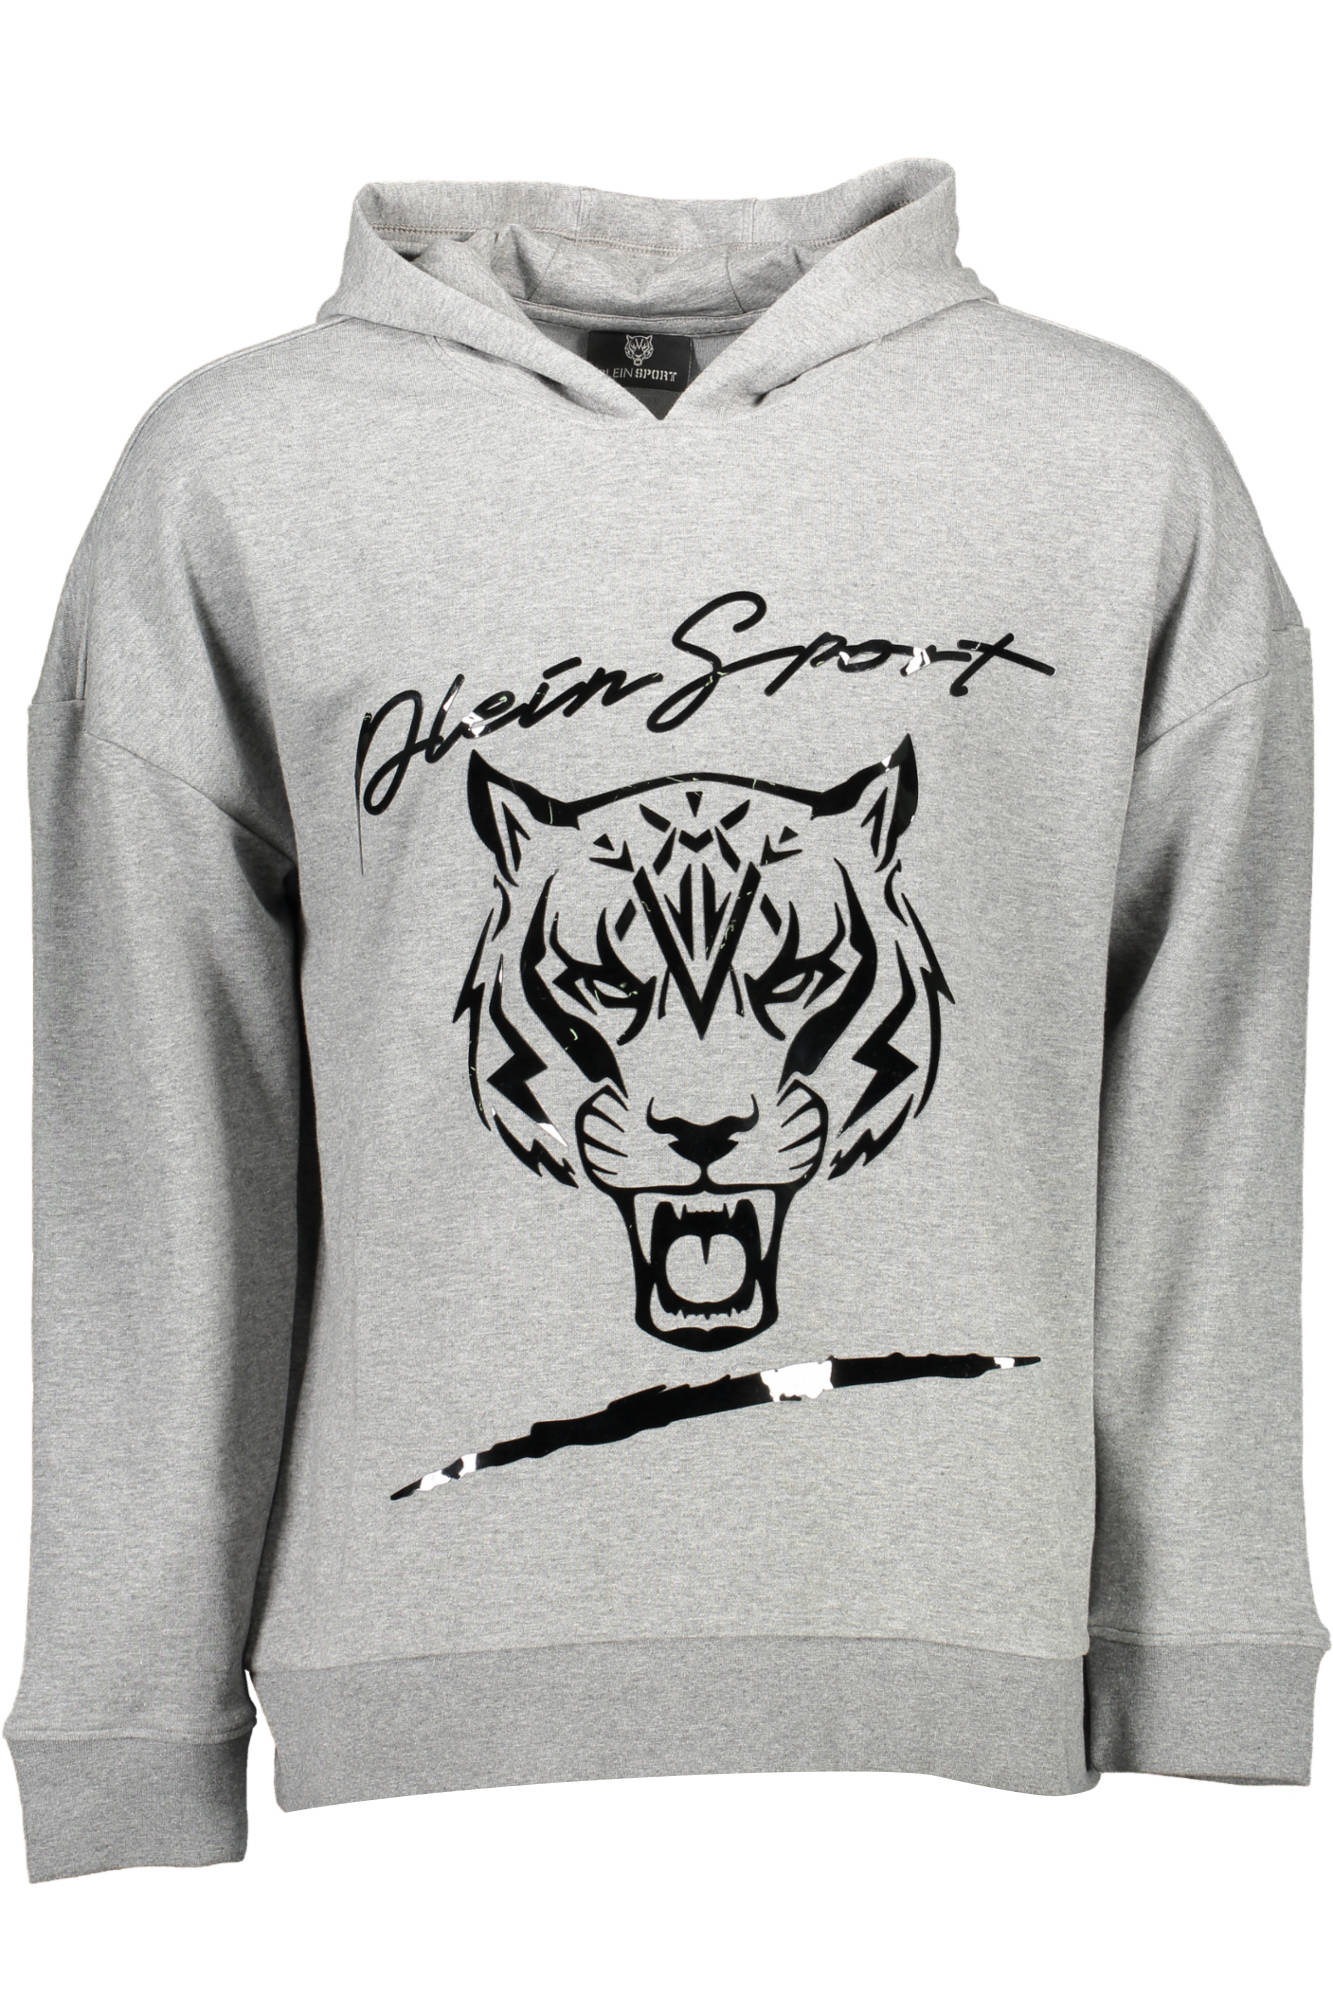 Plein Sport Gray Sweater - Fizigo